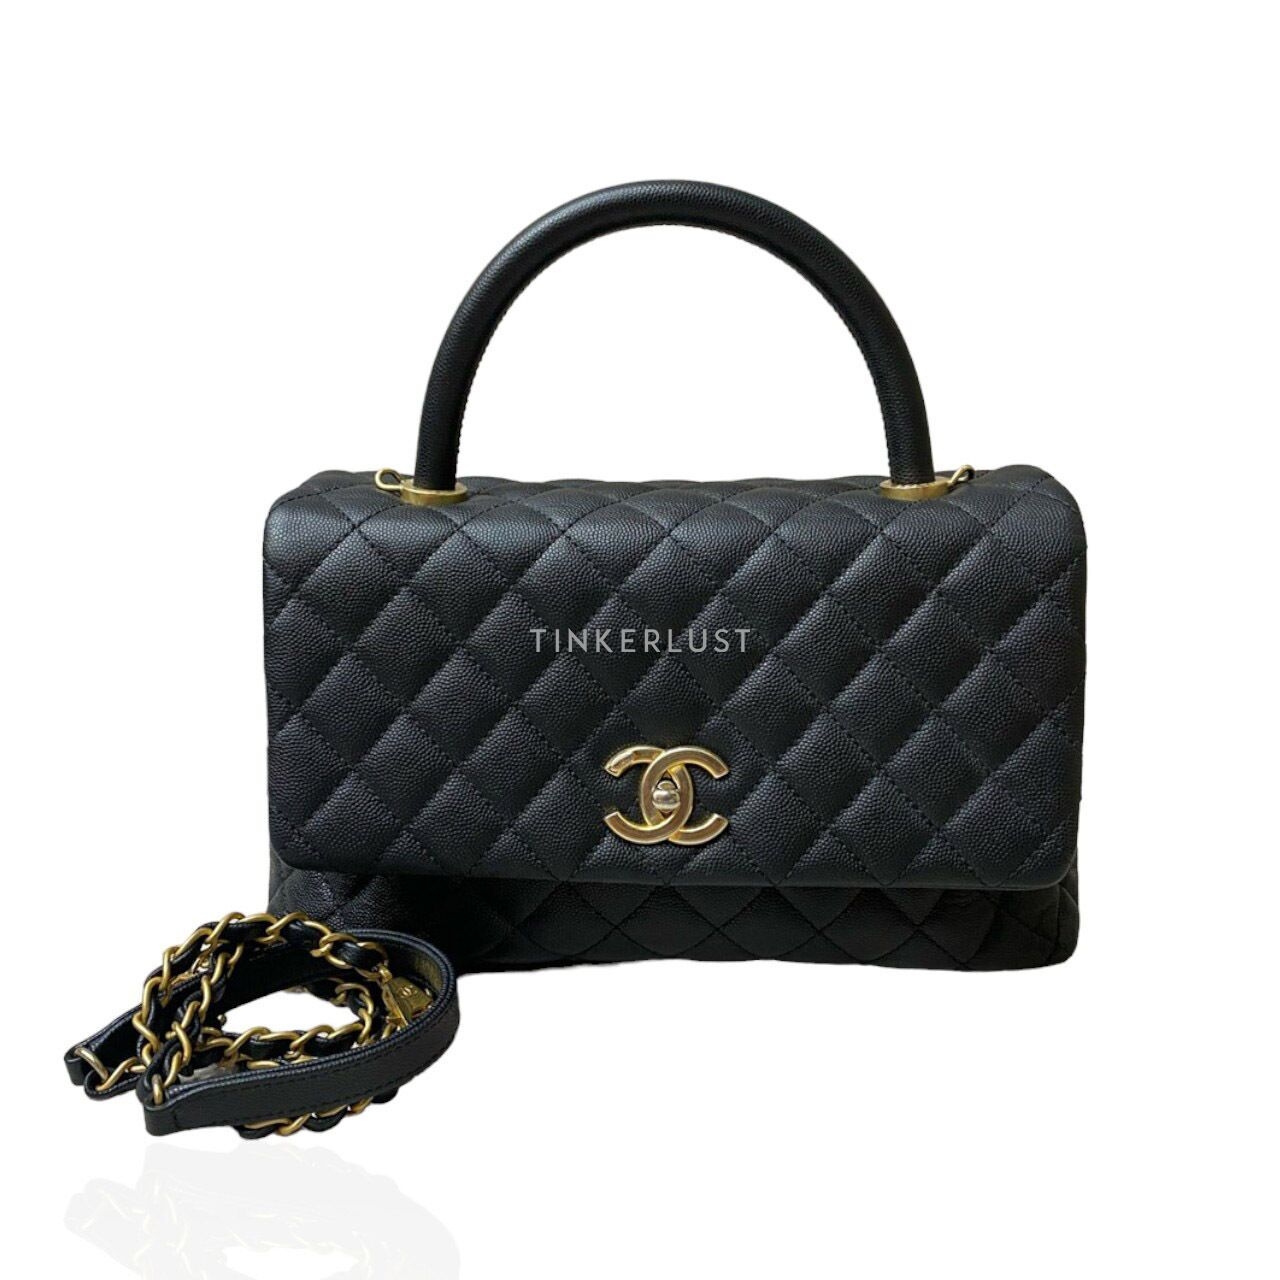 Chanel Coco Handle Medium Black Caviar #23 GHW Satchel